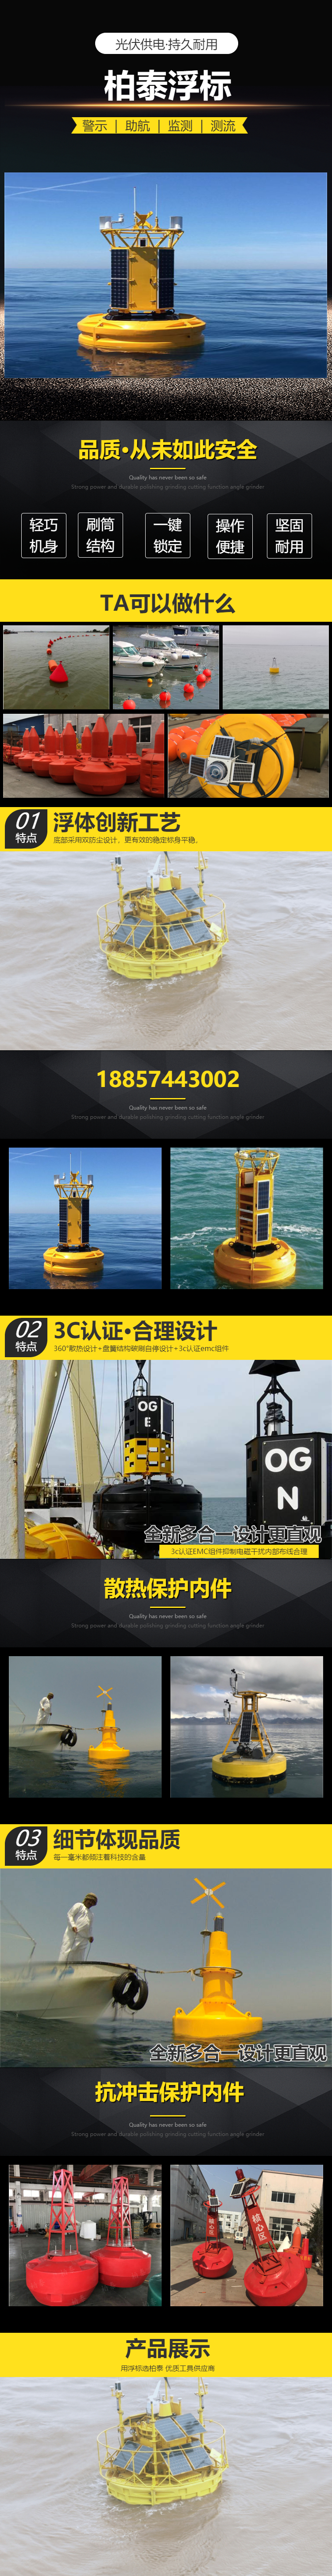 Ocean Navigation Reference Base Station Navigation Mark Baitai Polyethylene Anti adhesion Warning Buoy Aids Navigation Float Supply